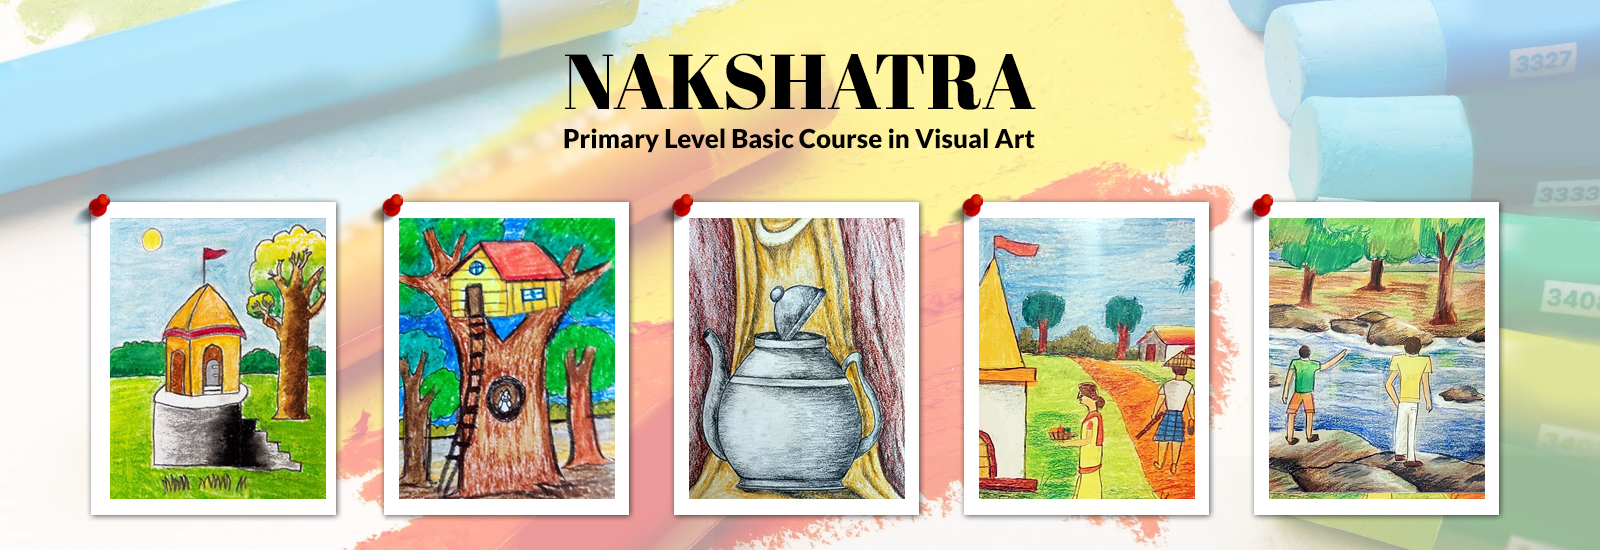 Nakshatra - Primary Level Basic Course in Visual Art